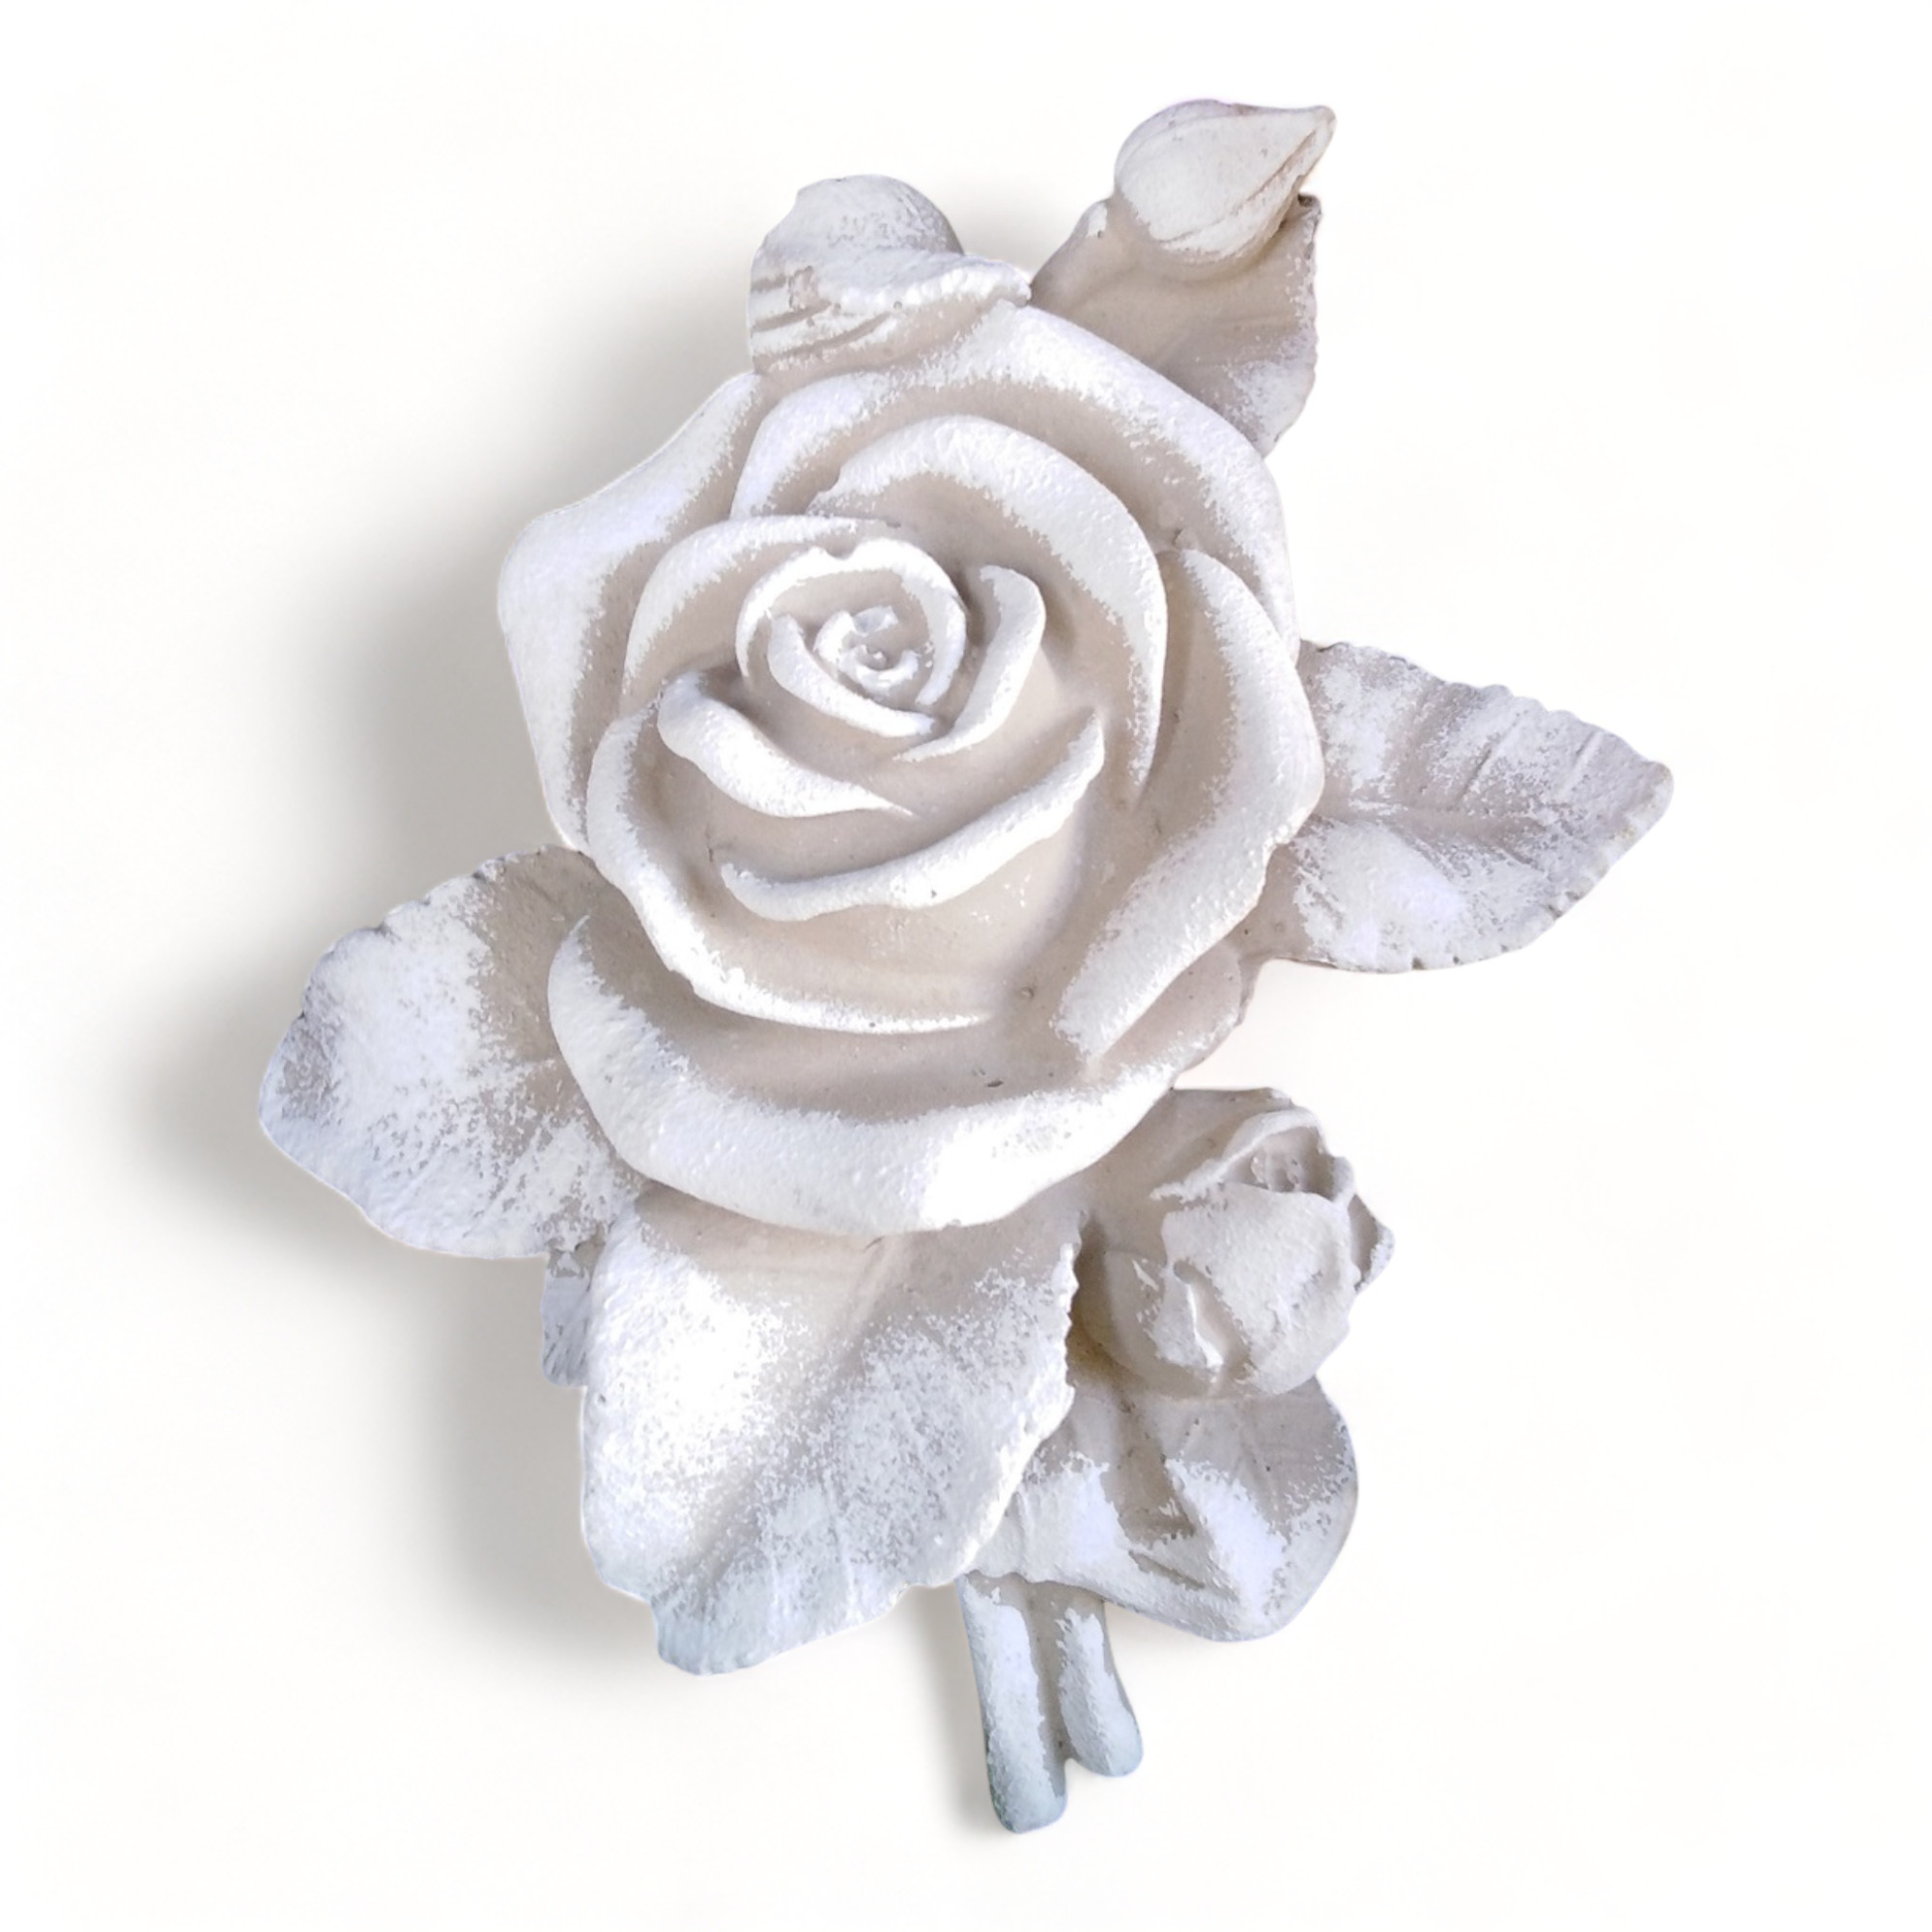 XL Rose mit Stiel Rosenblüte auch Grabdekoration Grabschmuck Steinguss 16cm grau/weiß, ca.360 g